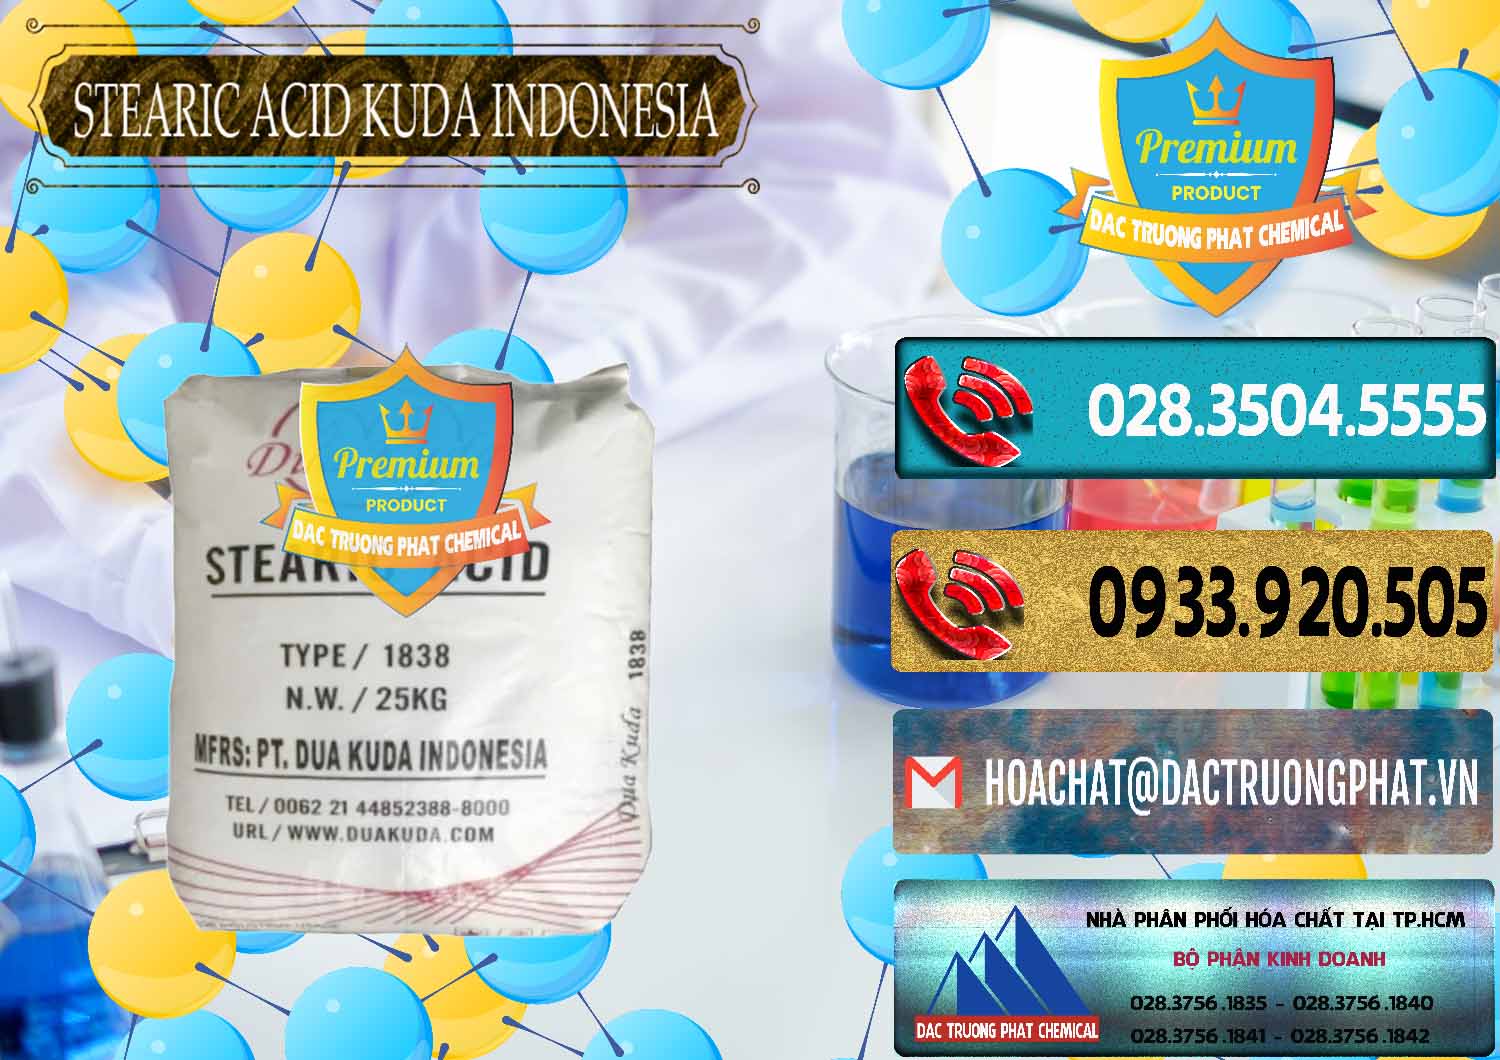 Công ty nhập khẩu & bán Axit Stearic - Stearic Acid Dua Kuda Indonesia - 0388 - Nơi chuyên cung ứng & phân phối hóa chất tại TP.HCM - hoachatdetnhuom.com